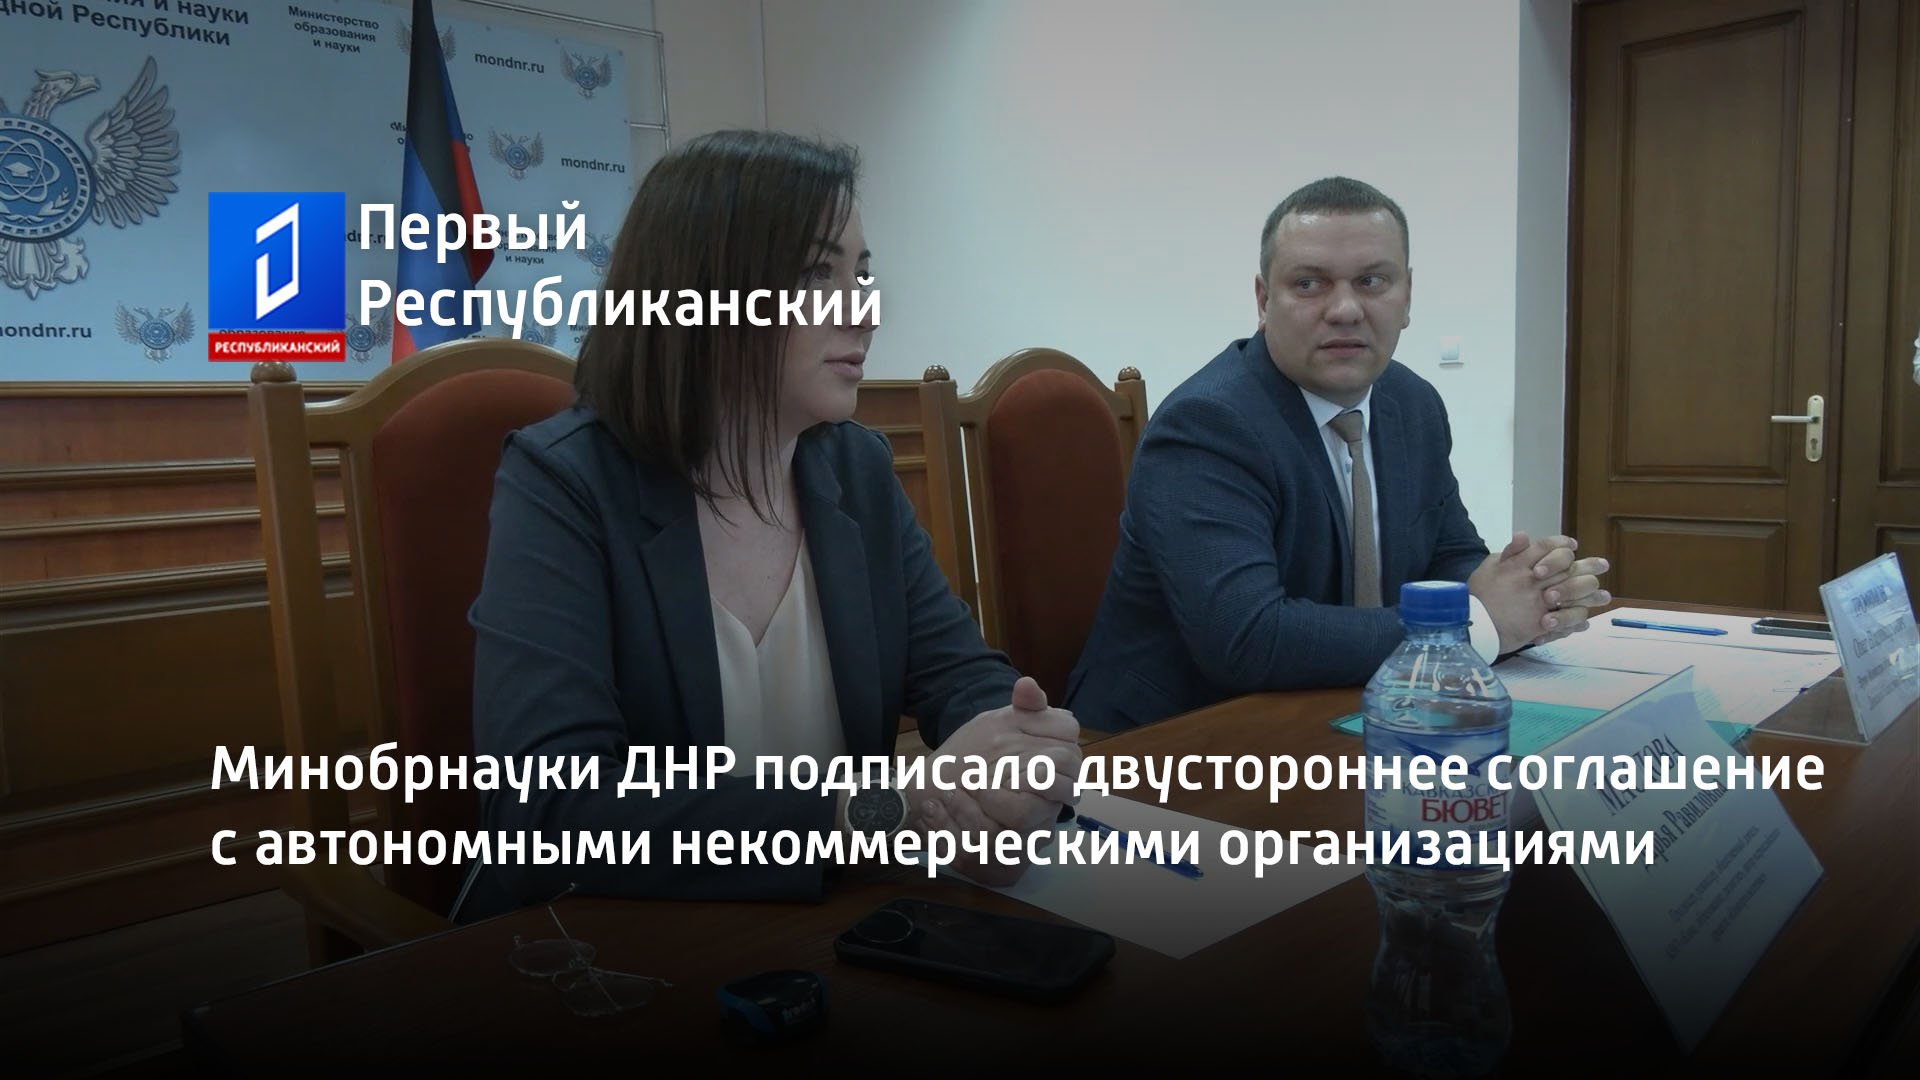 Минобрнауки ДНР подписало двустороннее соглашение с автономными некоммерческими организациями